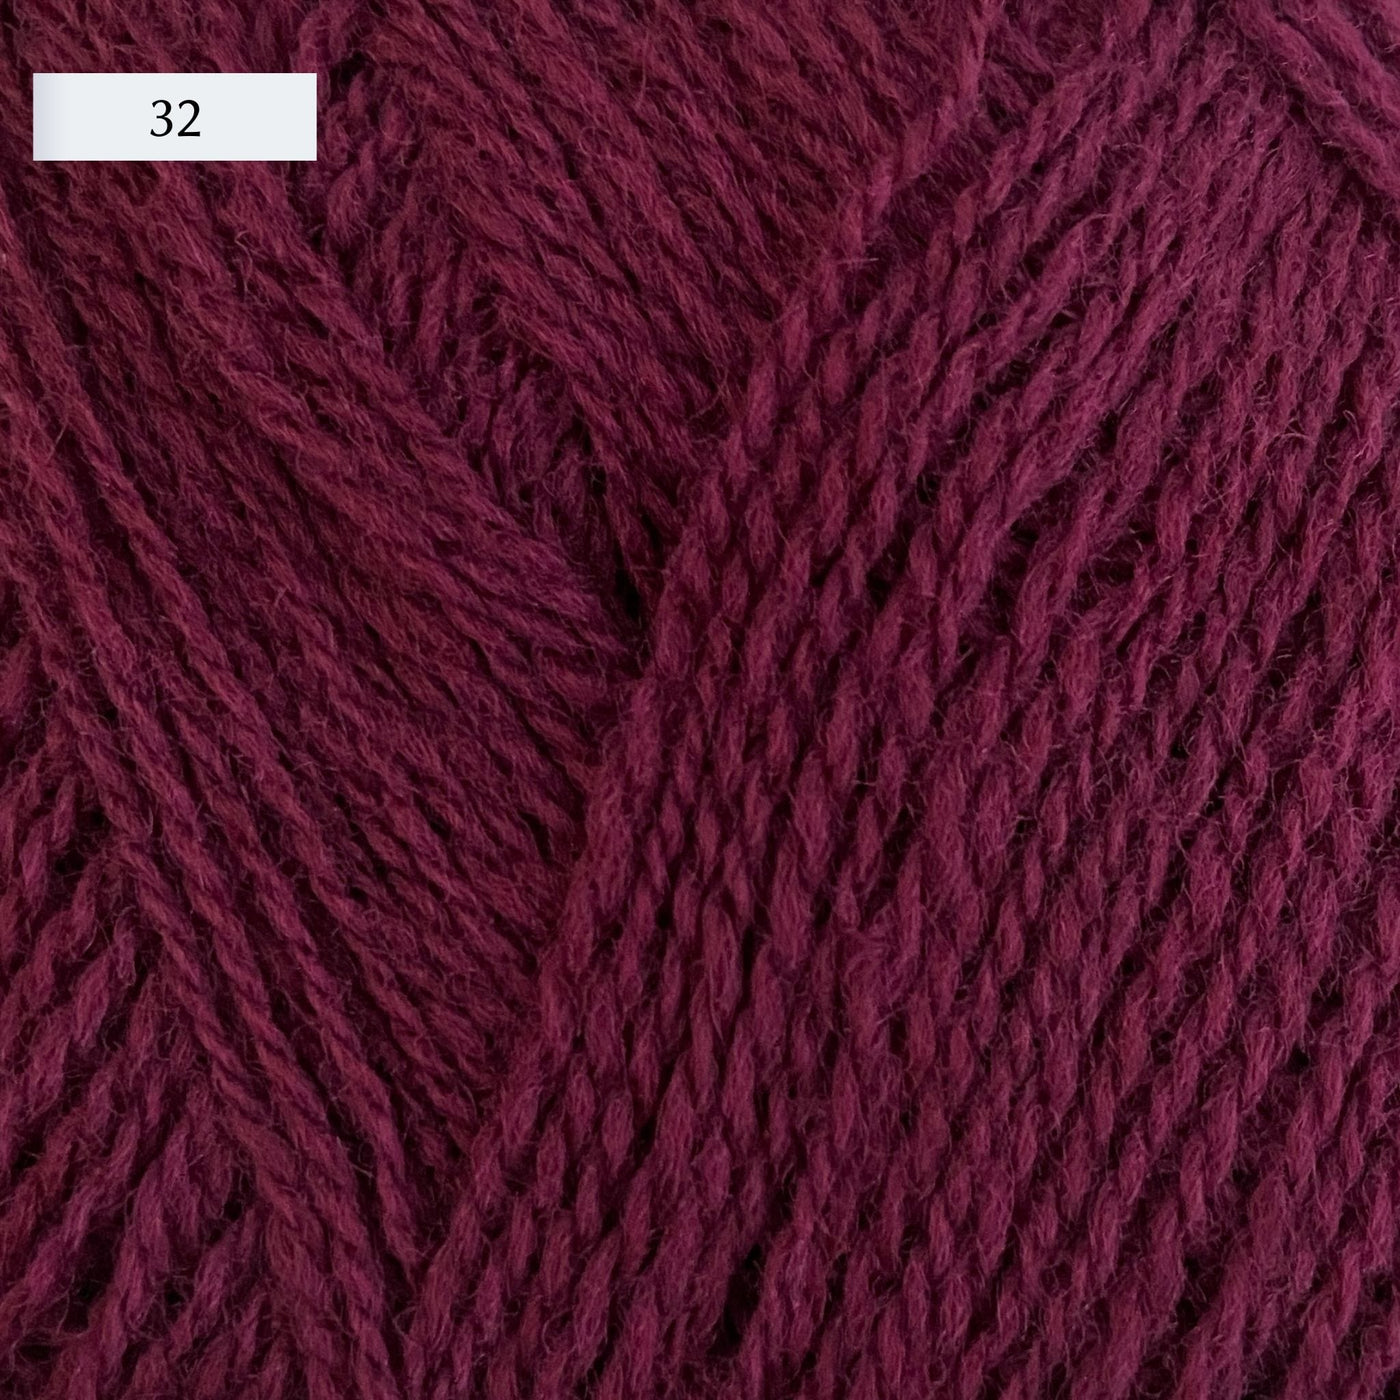 Rauma Lamullgarn, a fingering weight yarn, in color 32, a warm raspberry